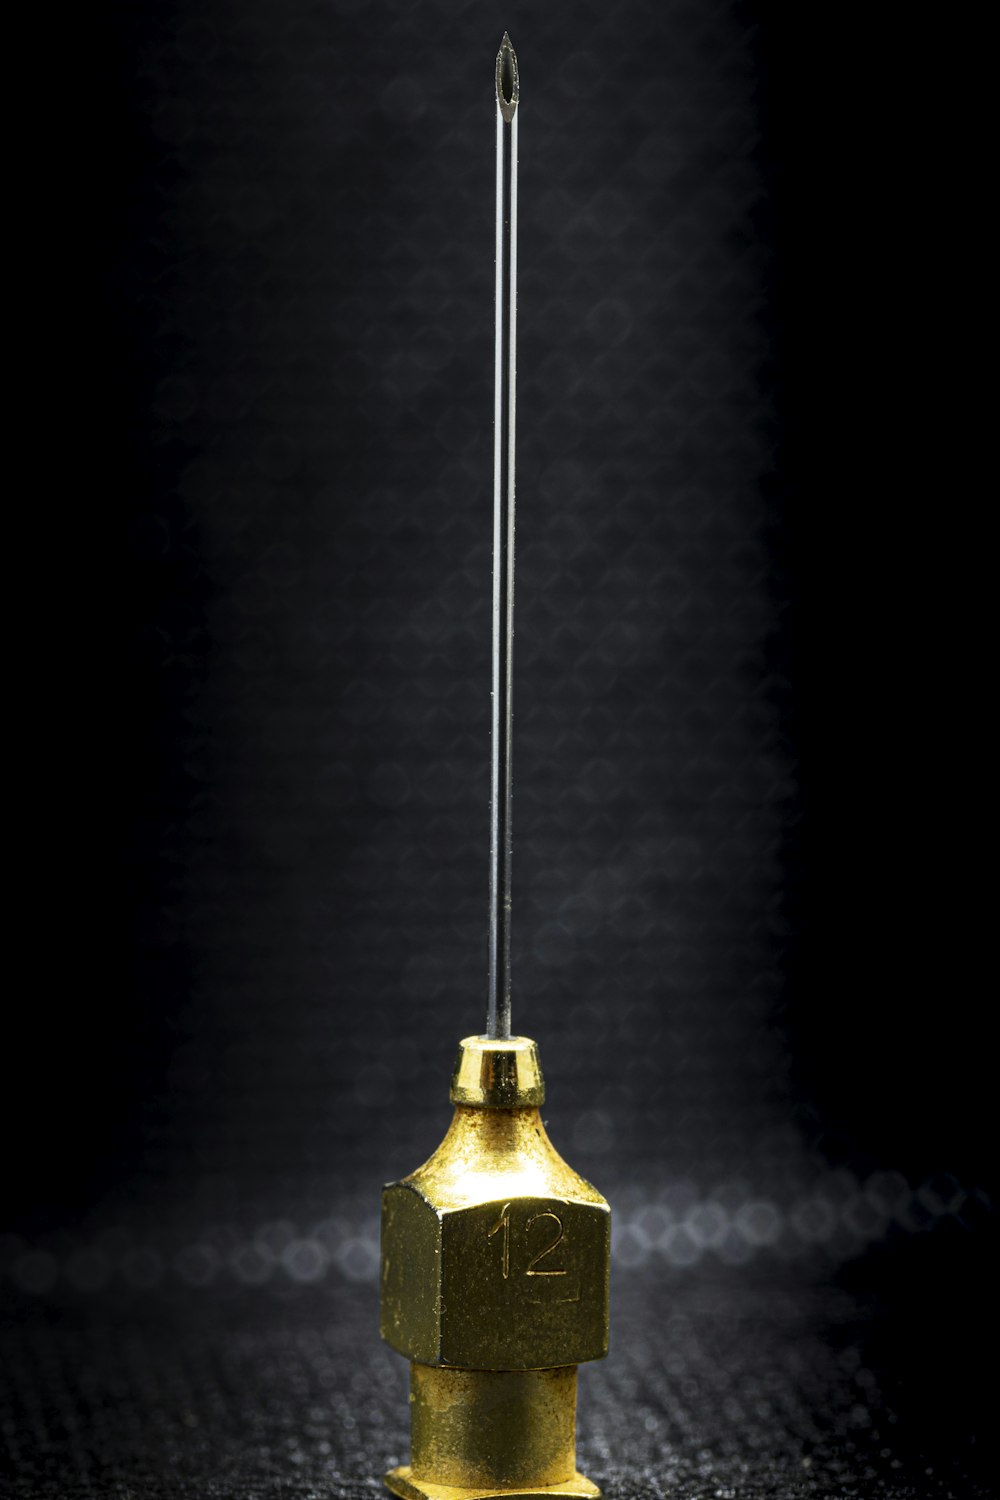 campana dorada sobre superficie negra